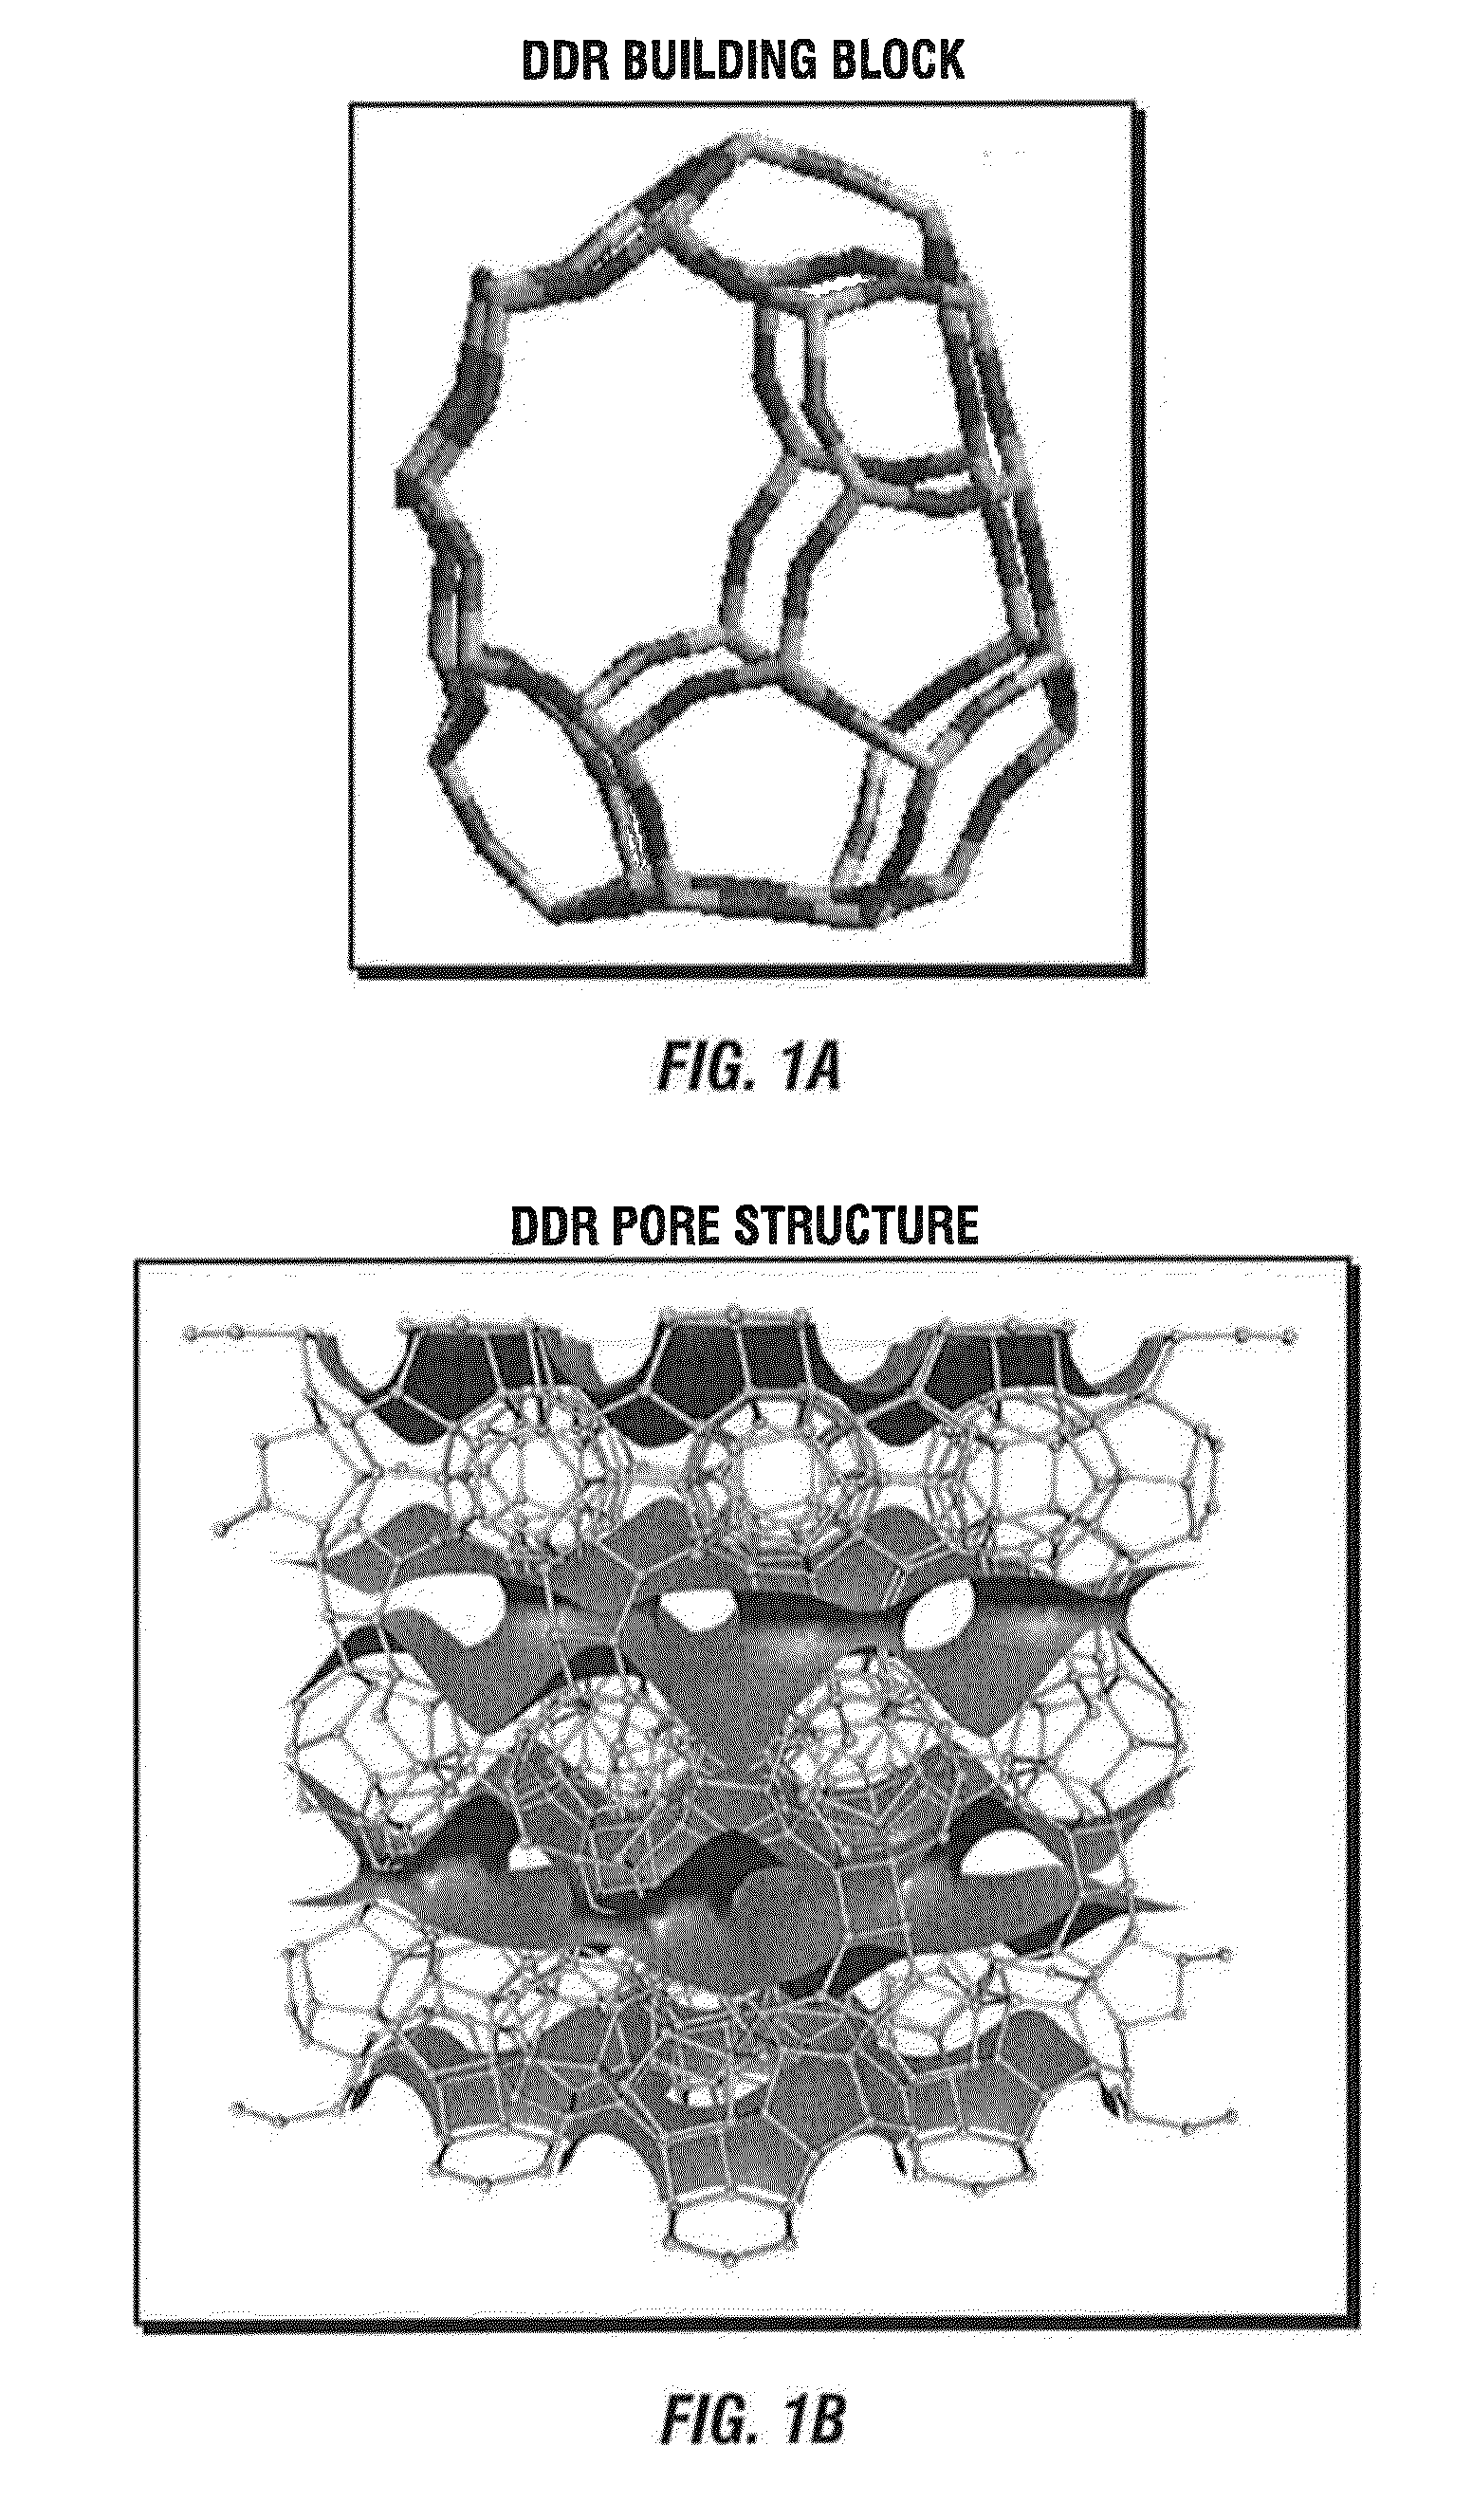 Zeolite DDR membranes